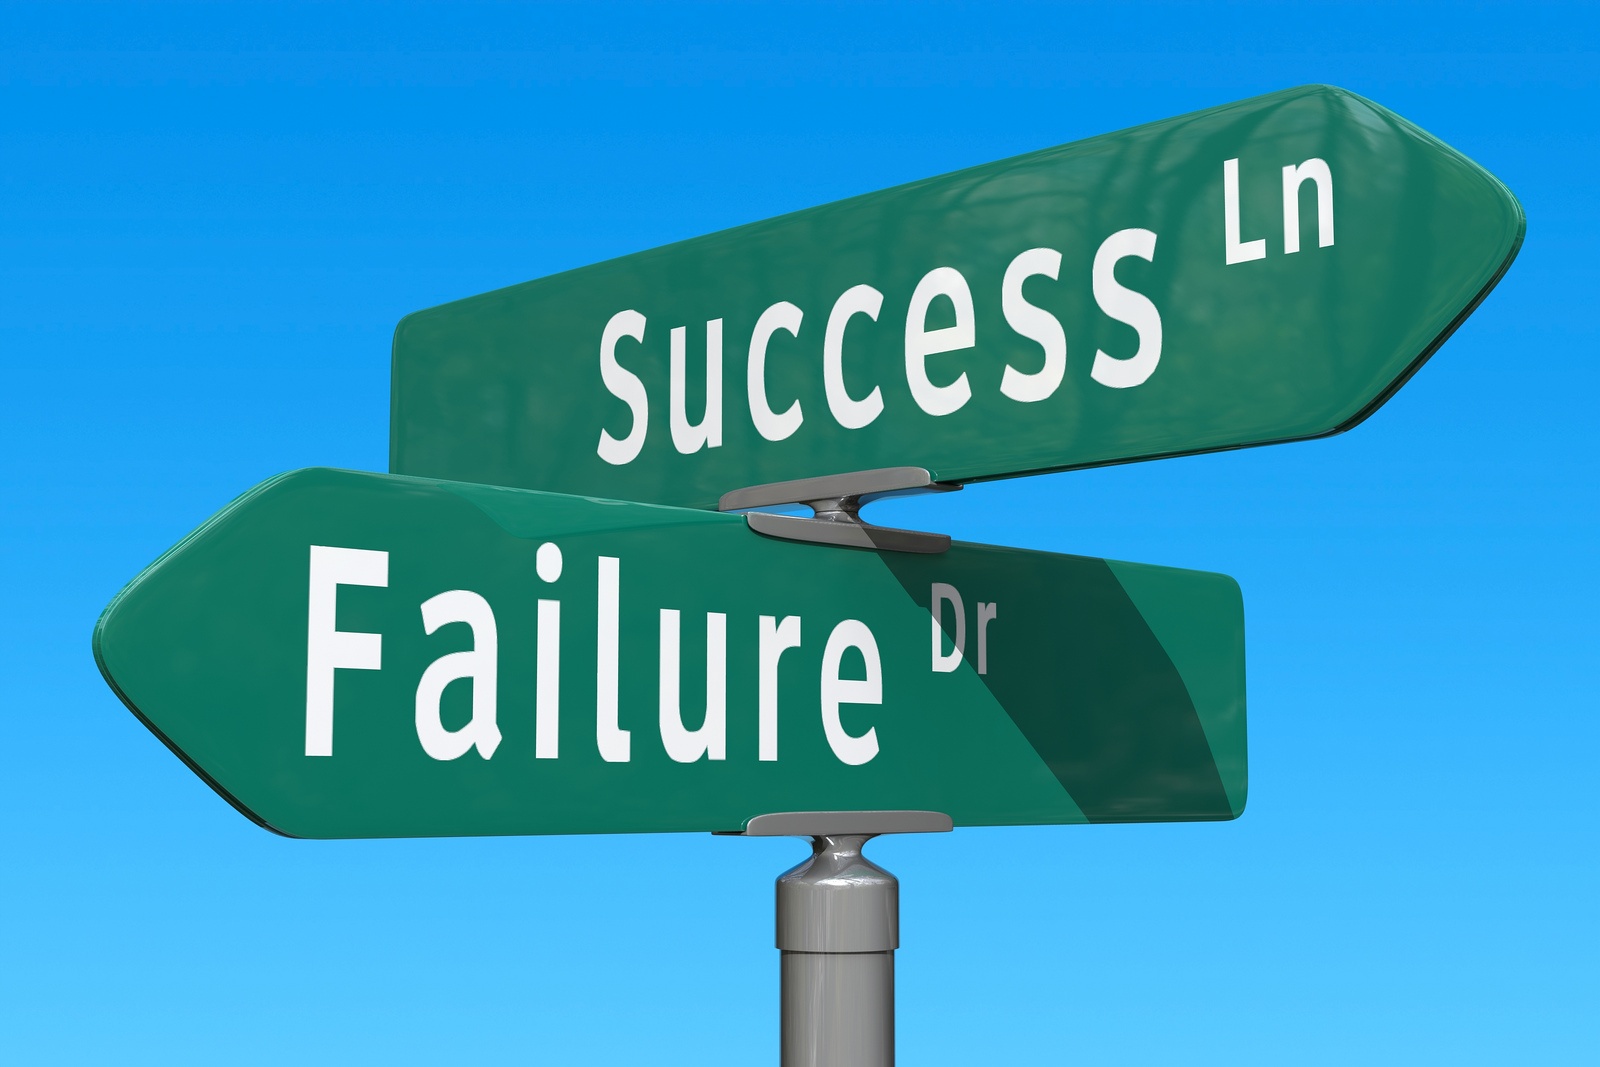 Success or failure